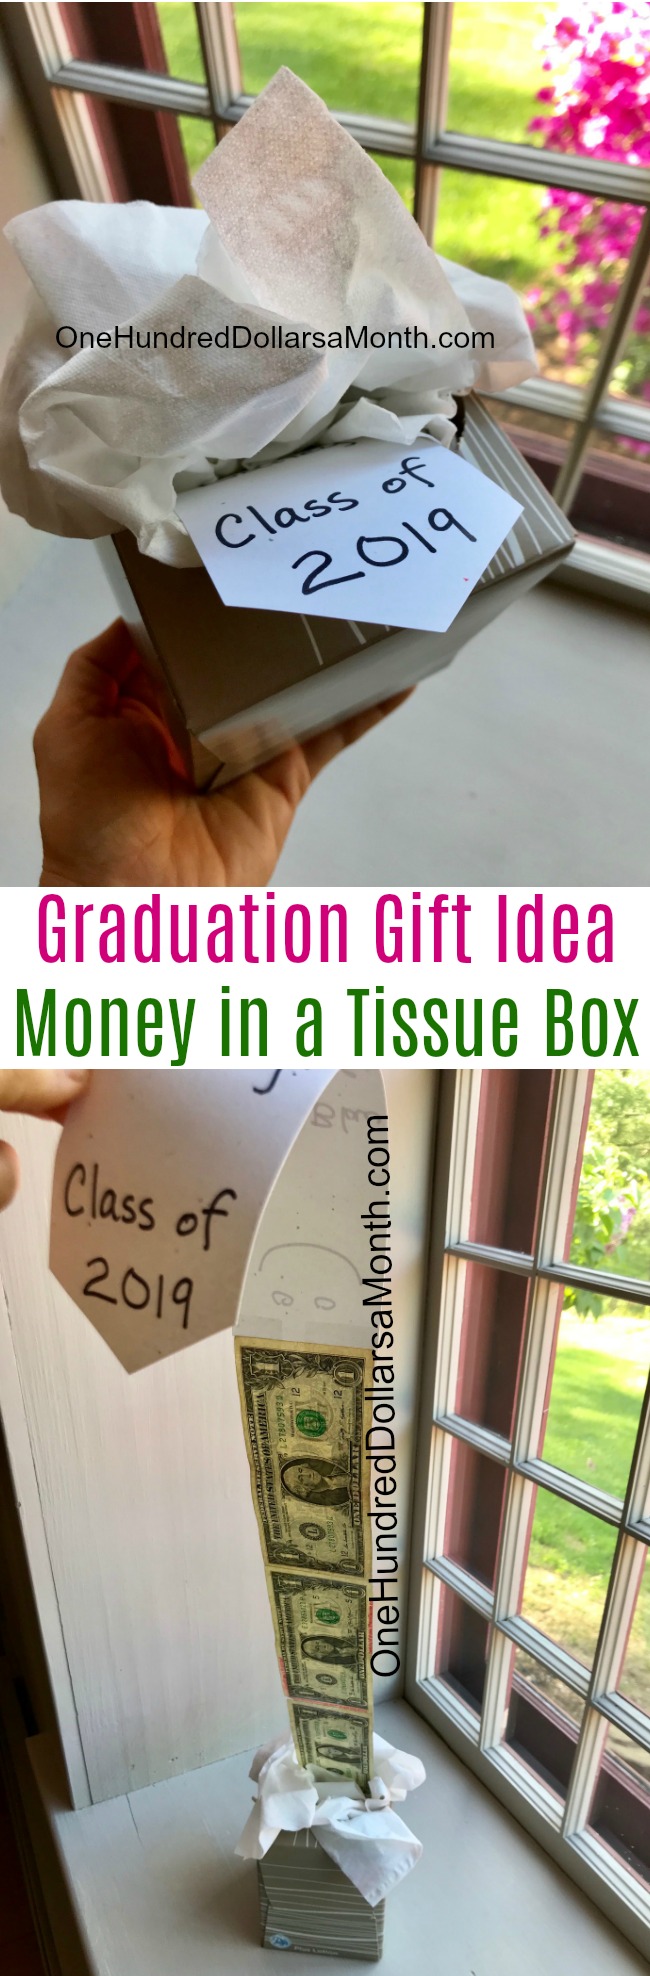 Graduation Gift Idea – Money in a Tissue Box